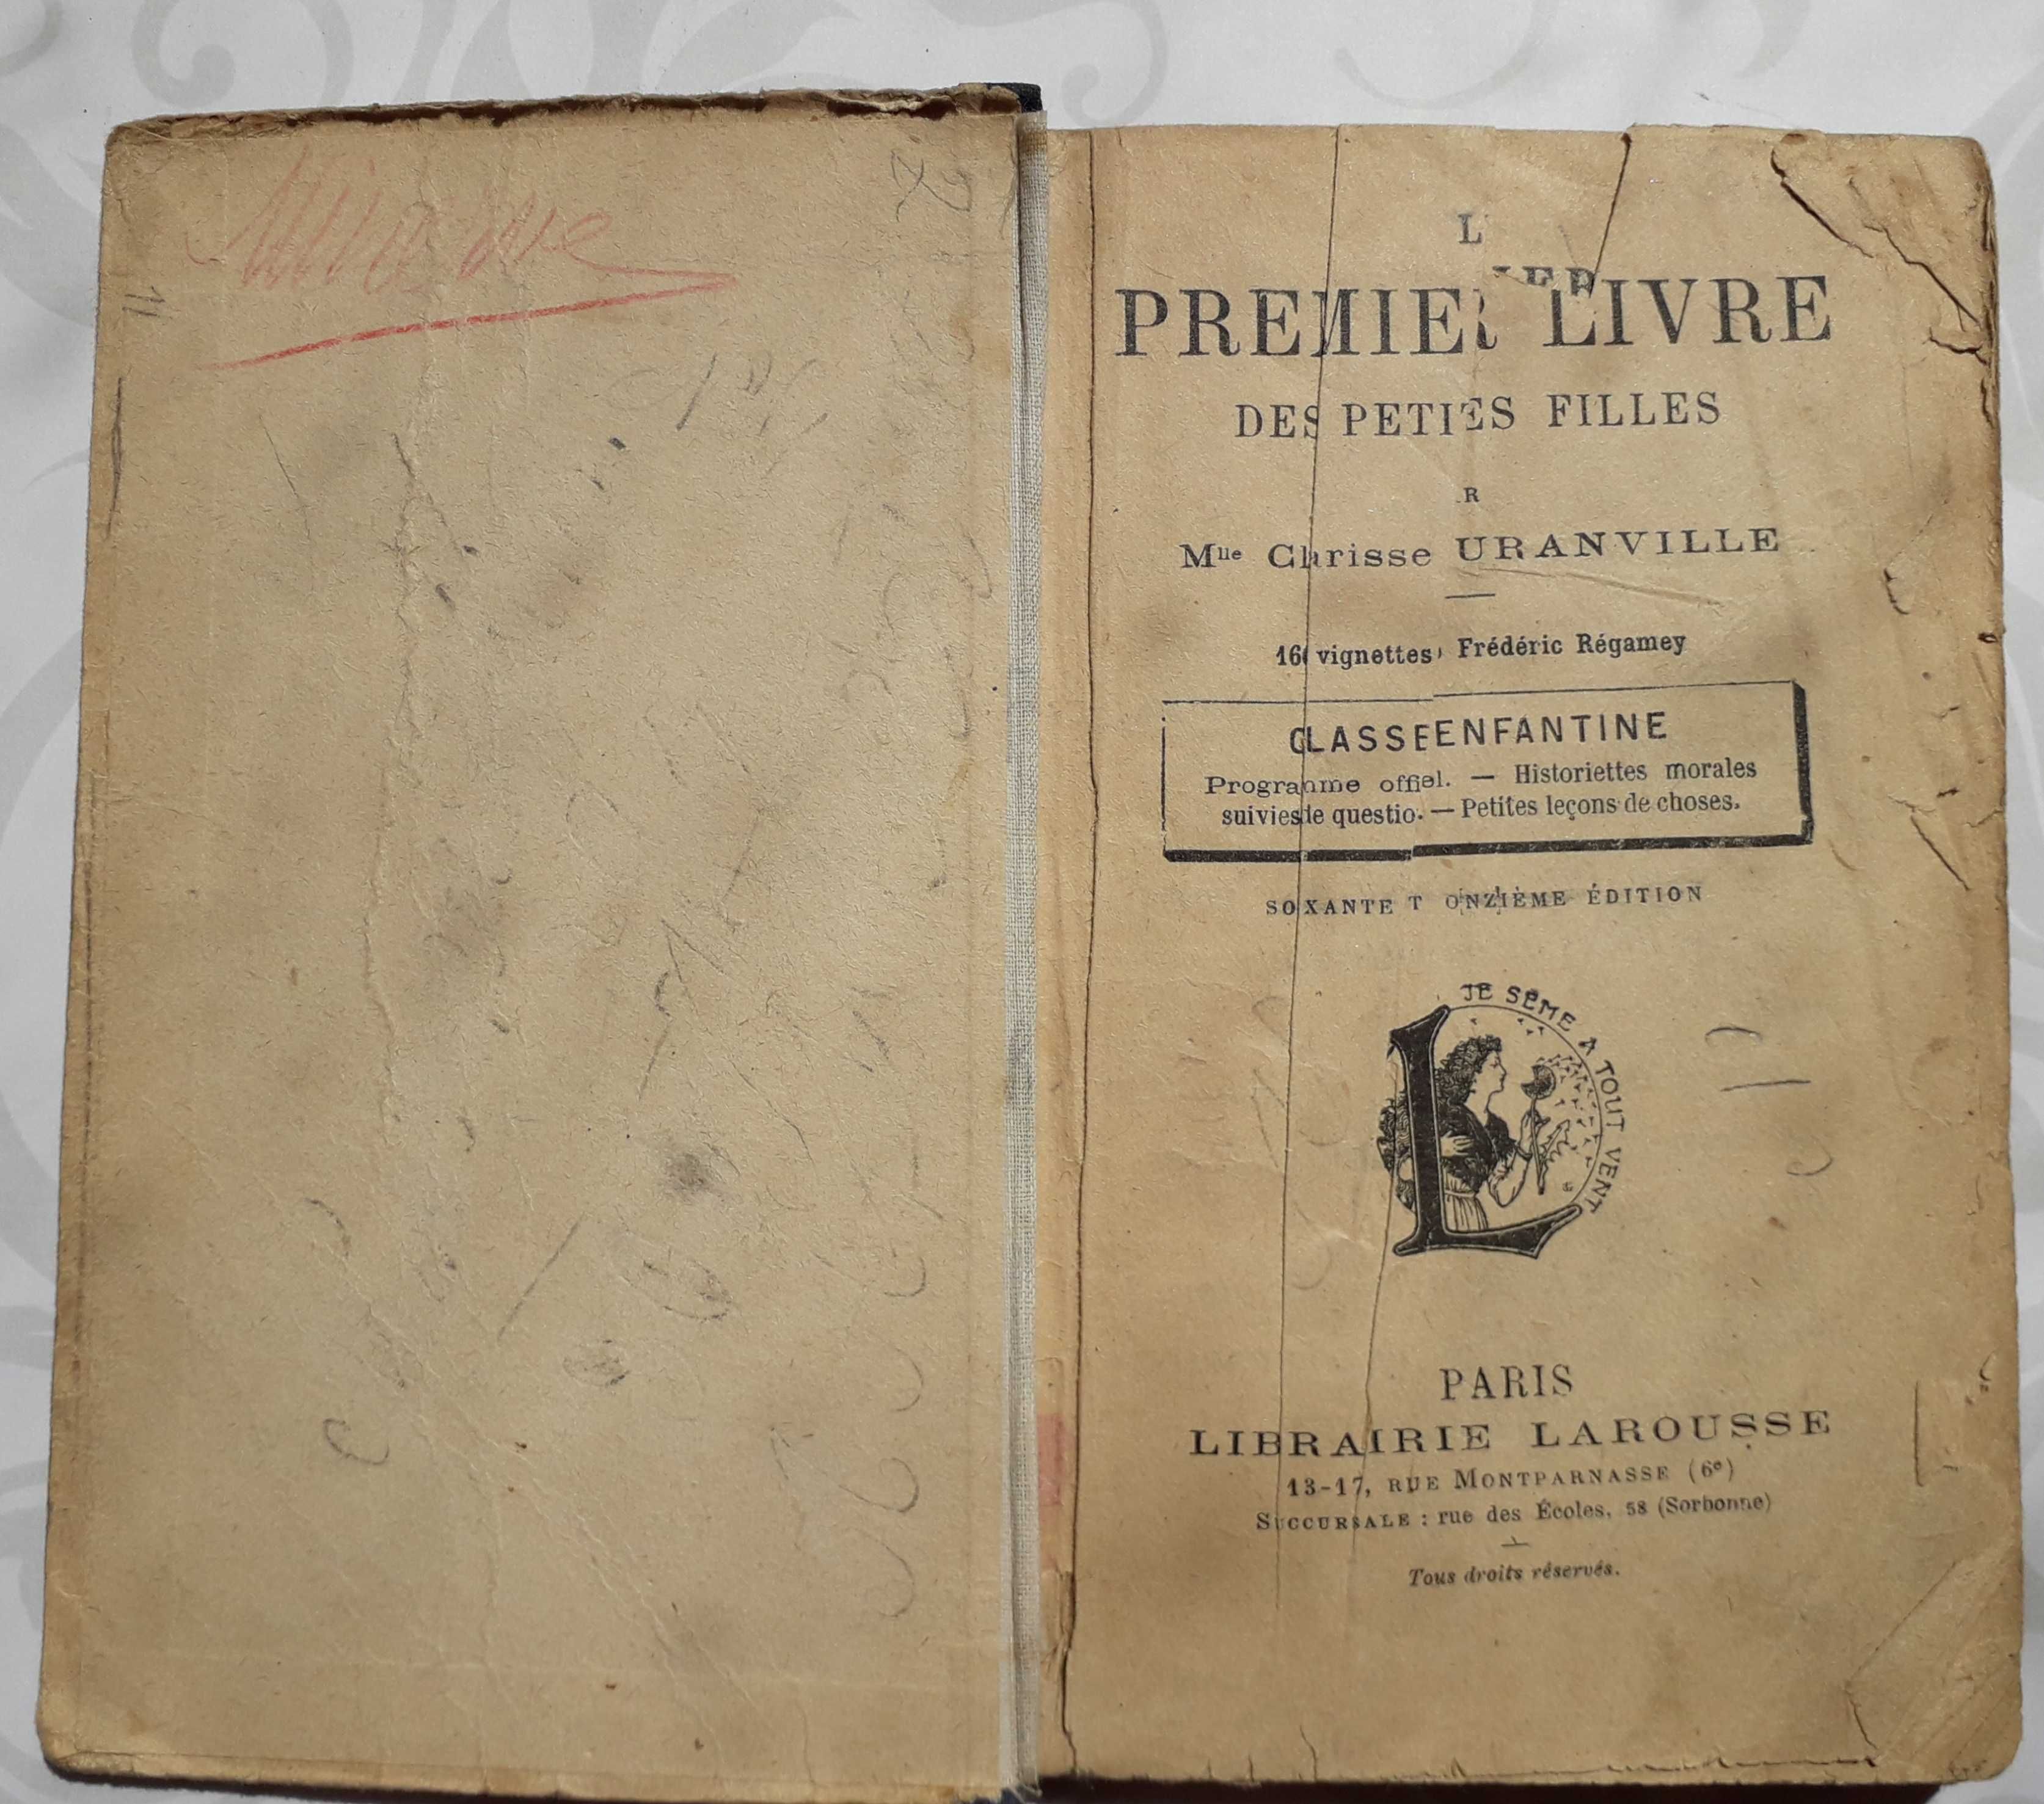 Manuale vechi in limba franceză, Larousse